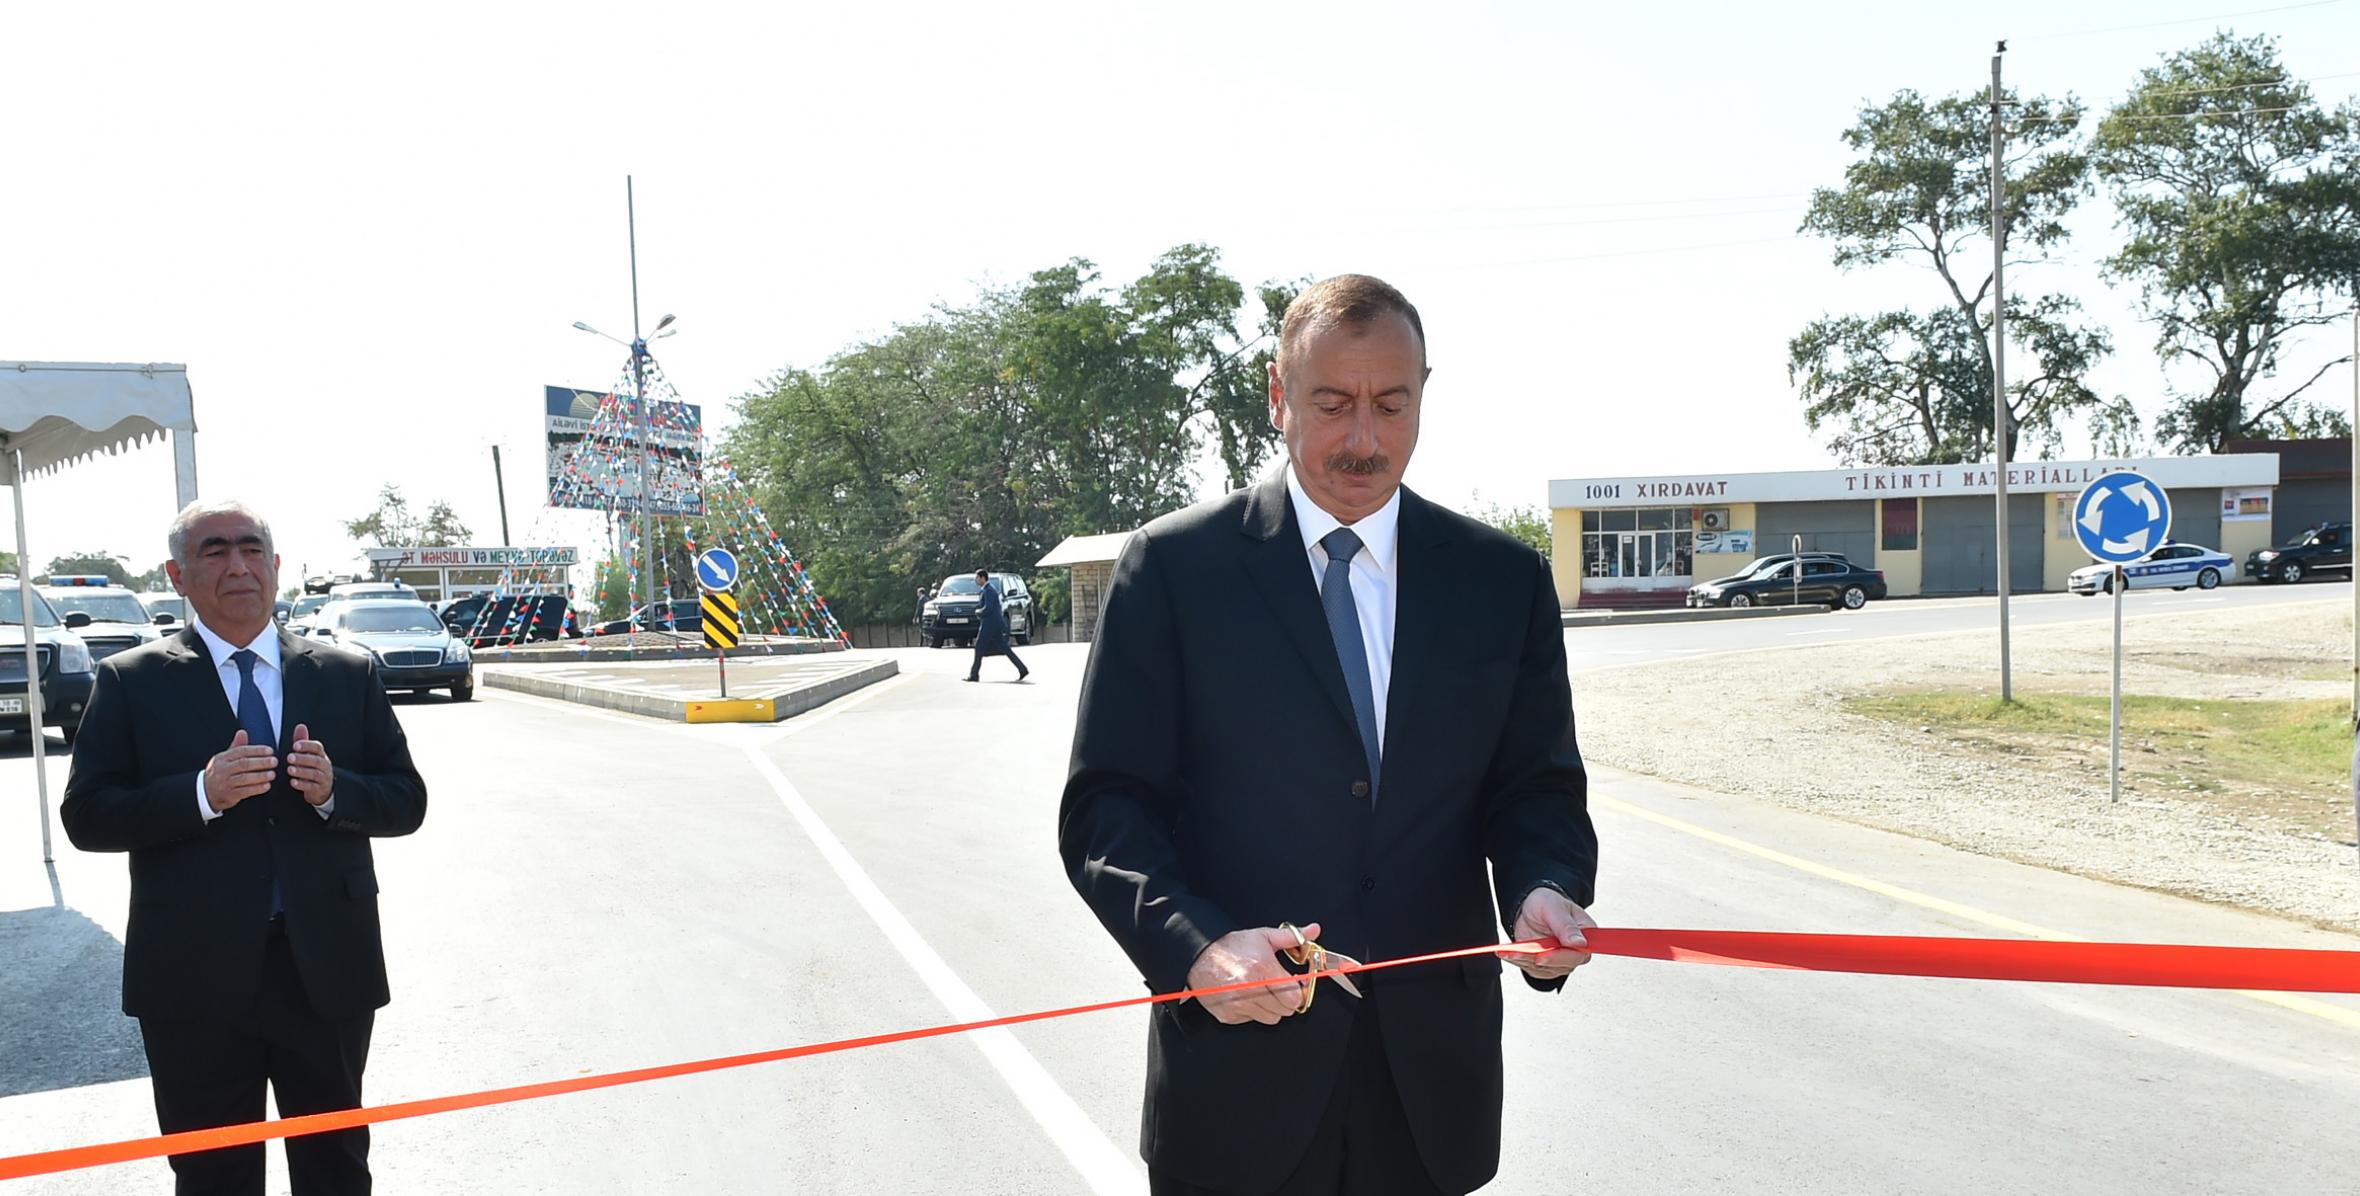 İlham Əliyev Xudat-Yalama-Zuxuloba avtomobil yolunun açılışını edib